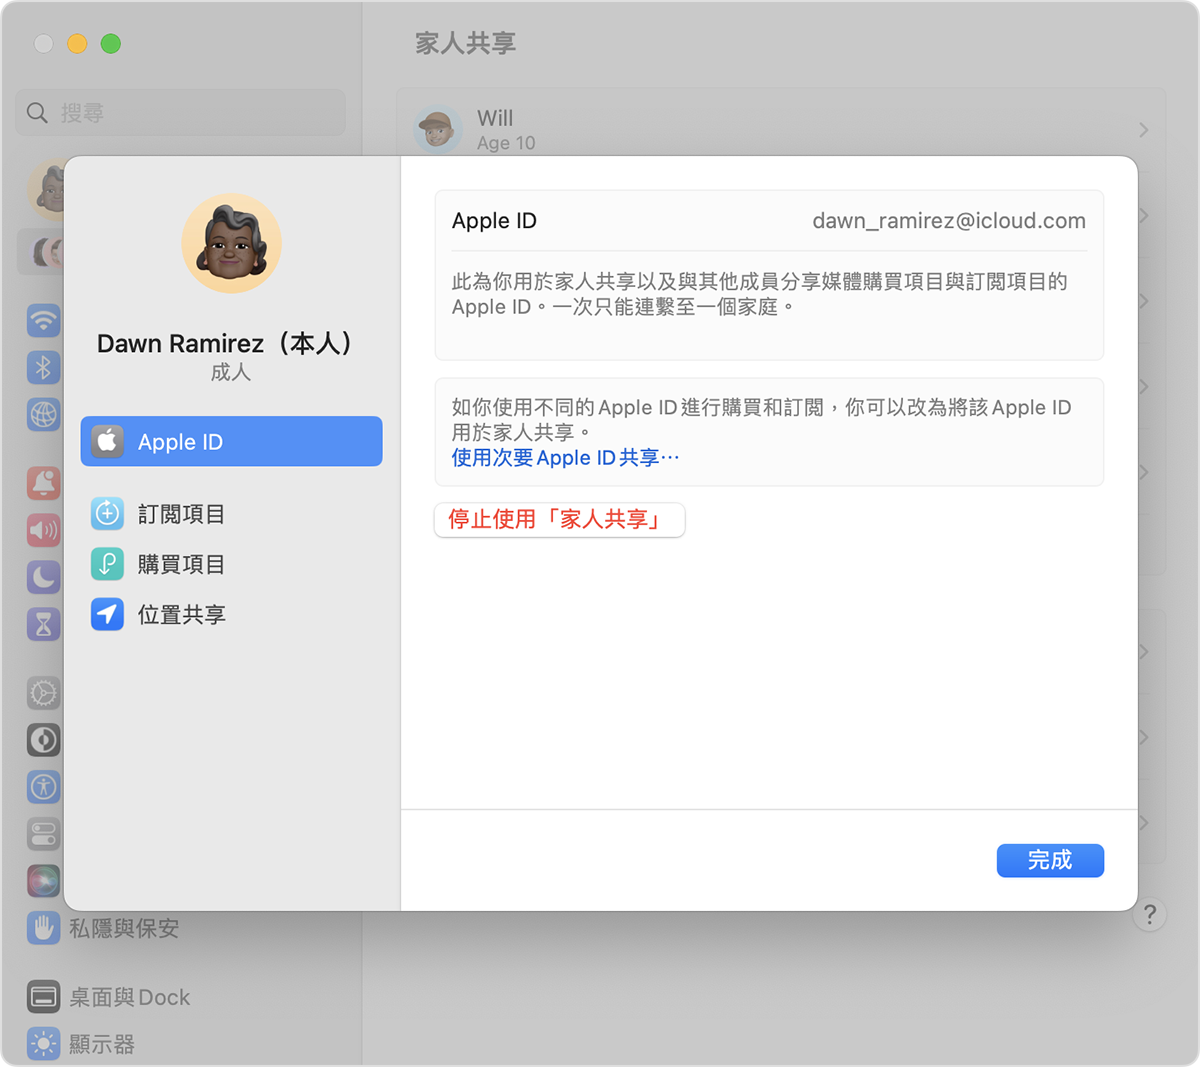 「使用次要 Apple ID 共享」選項以藍色文字顯示。